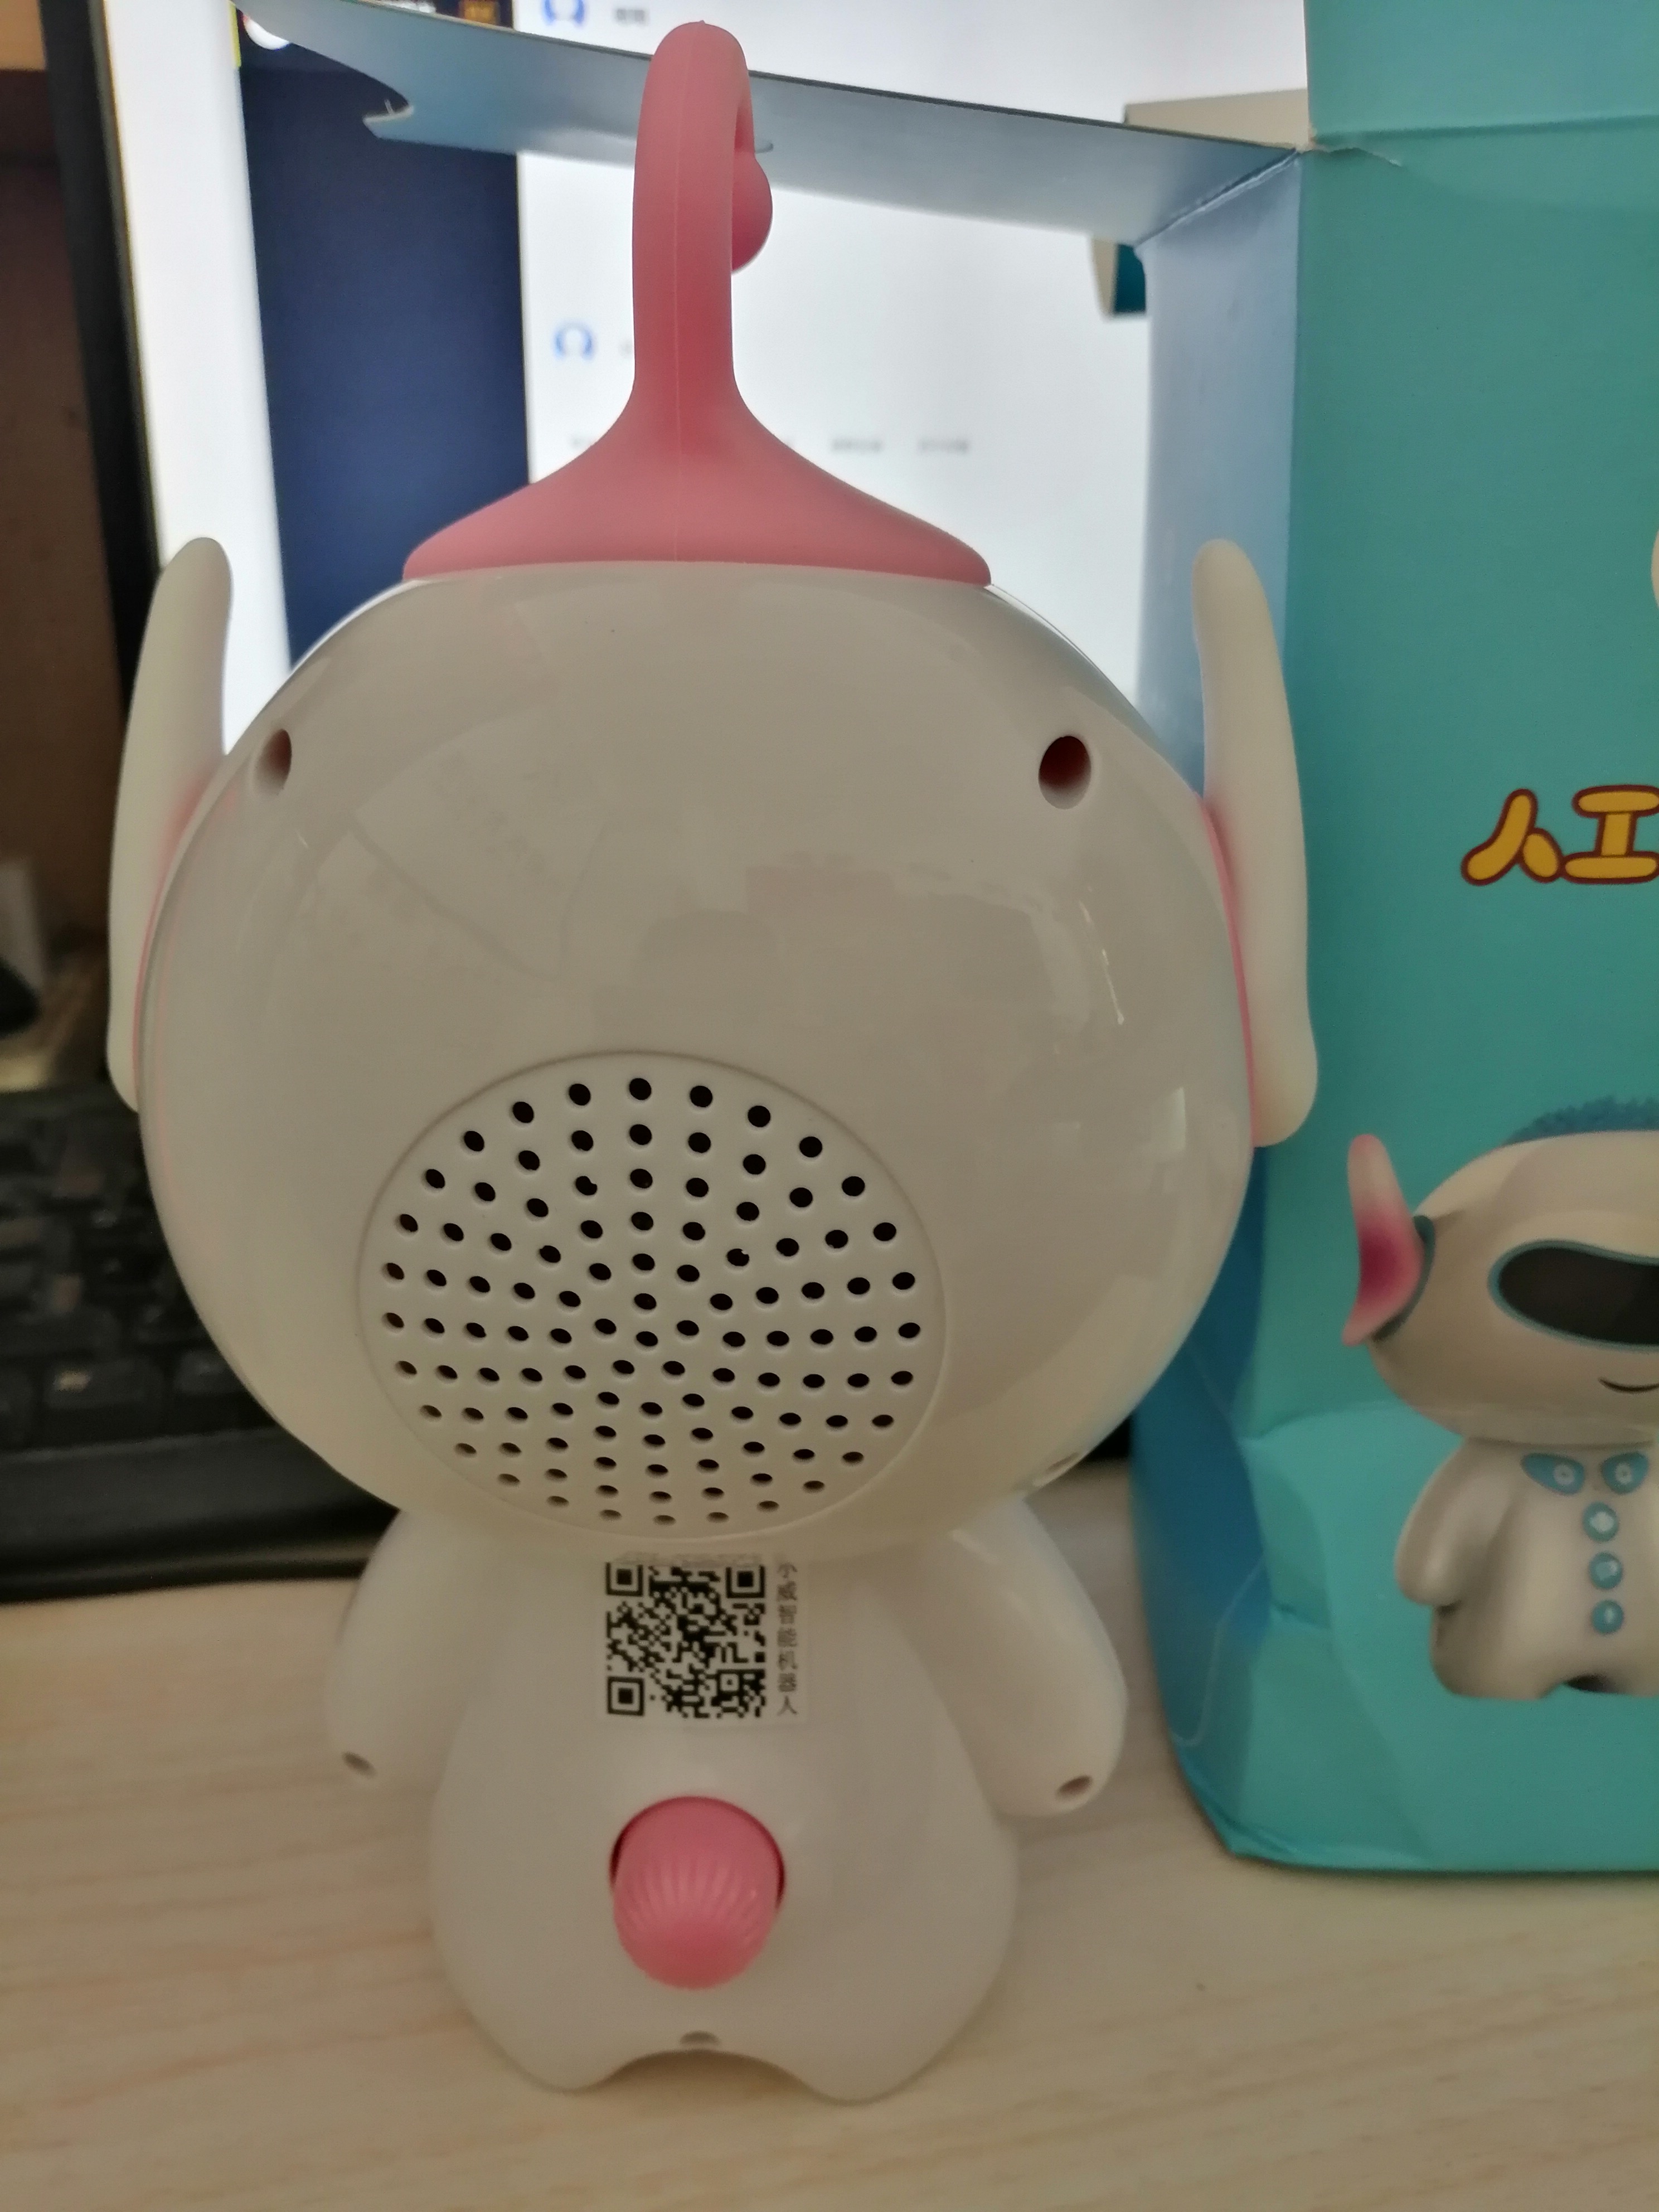 海语(haiyu)智能机器人学习机早教机可对话聊天互动wifi对话语音教育